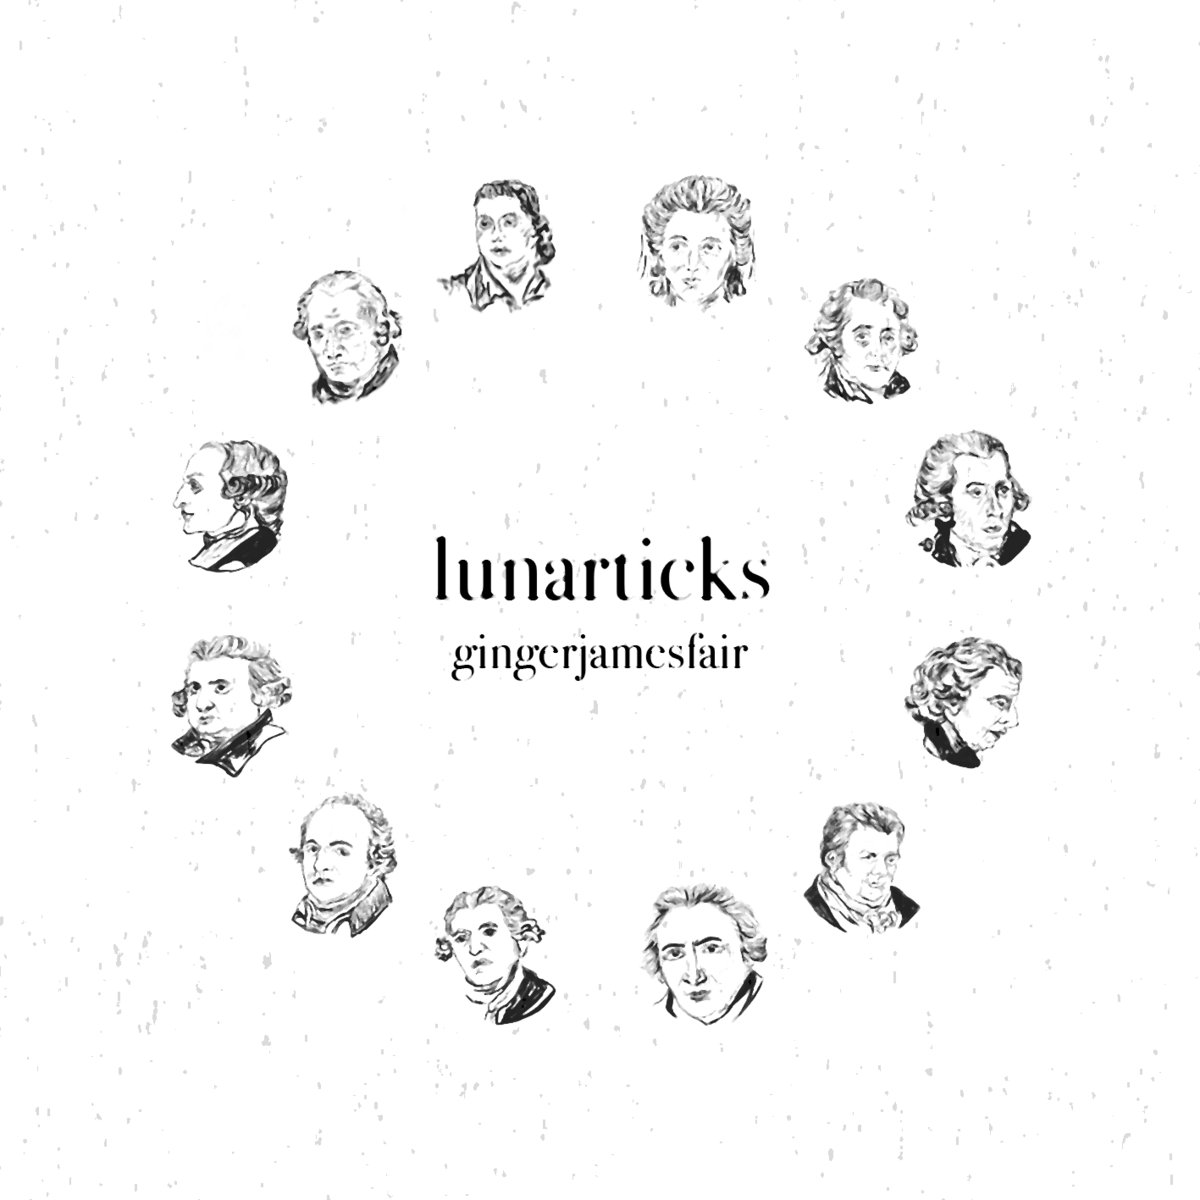 The Lunarticks album art